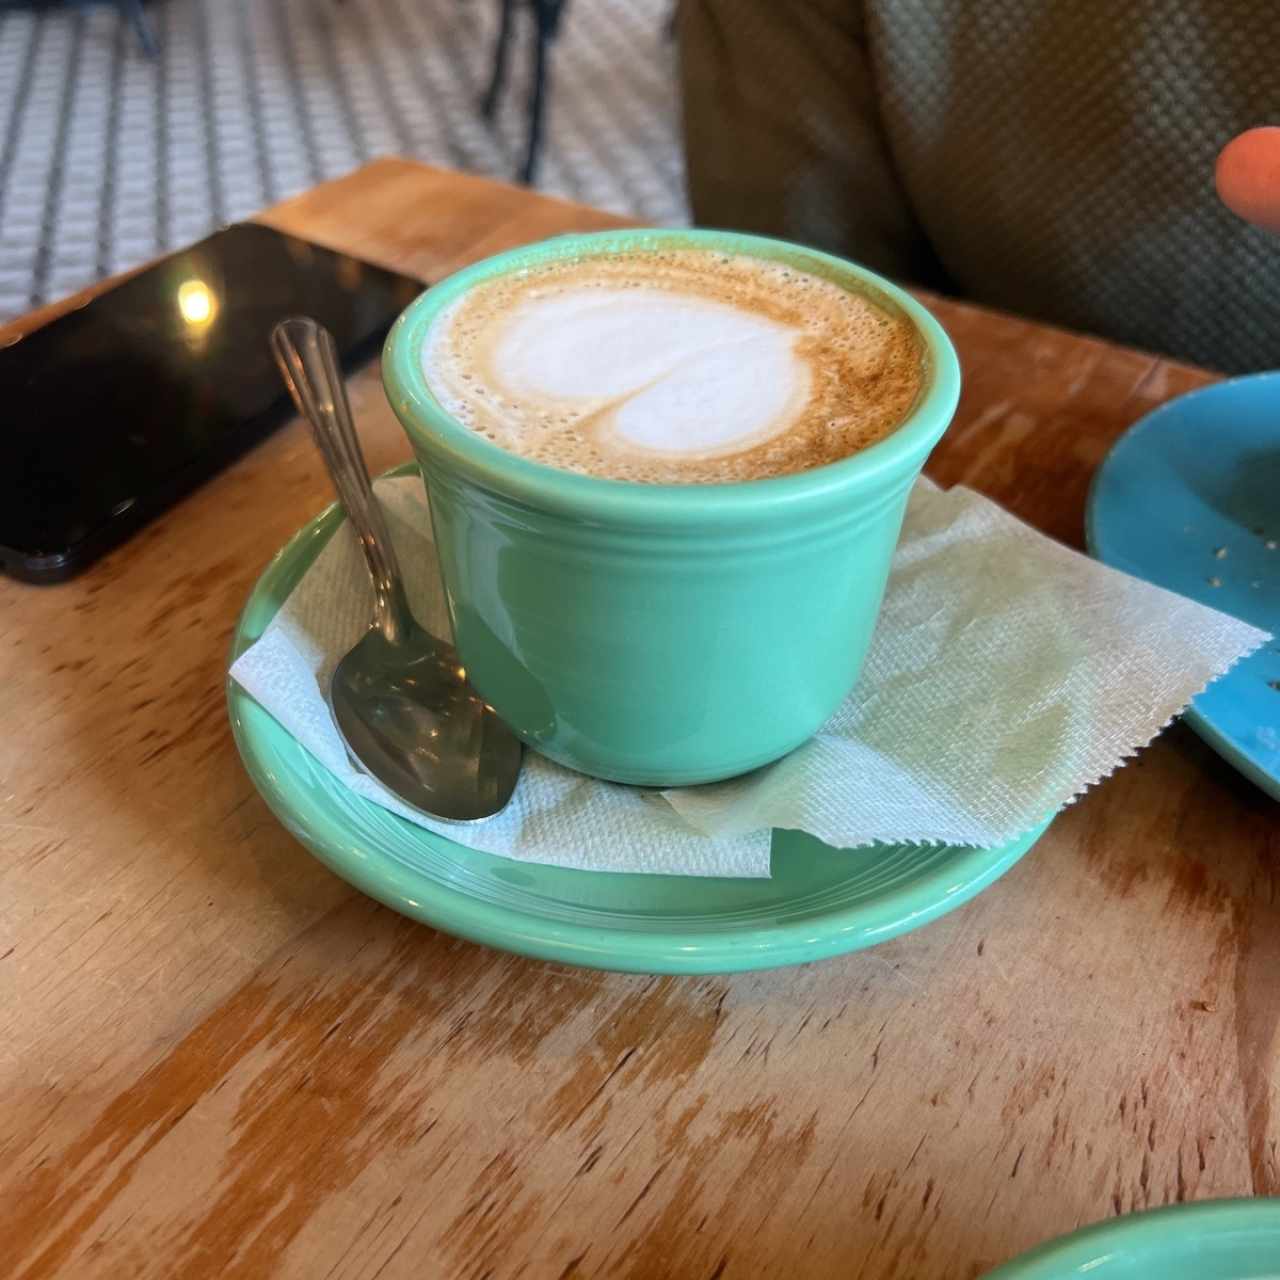 Cappuccino 